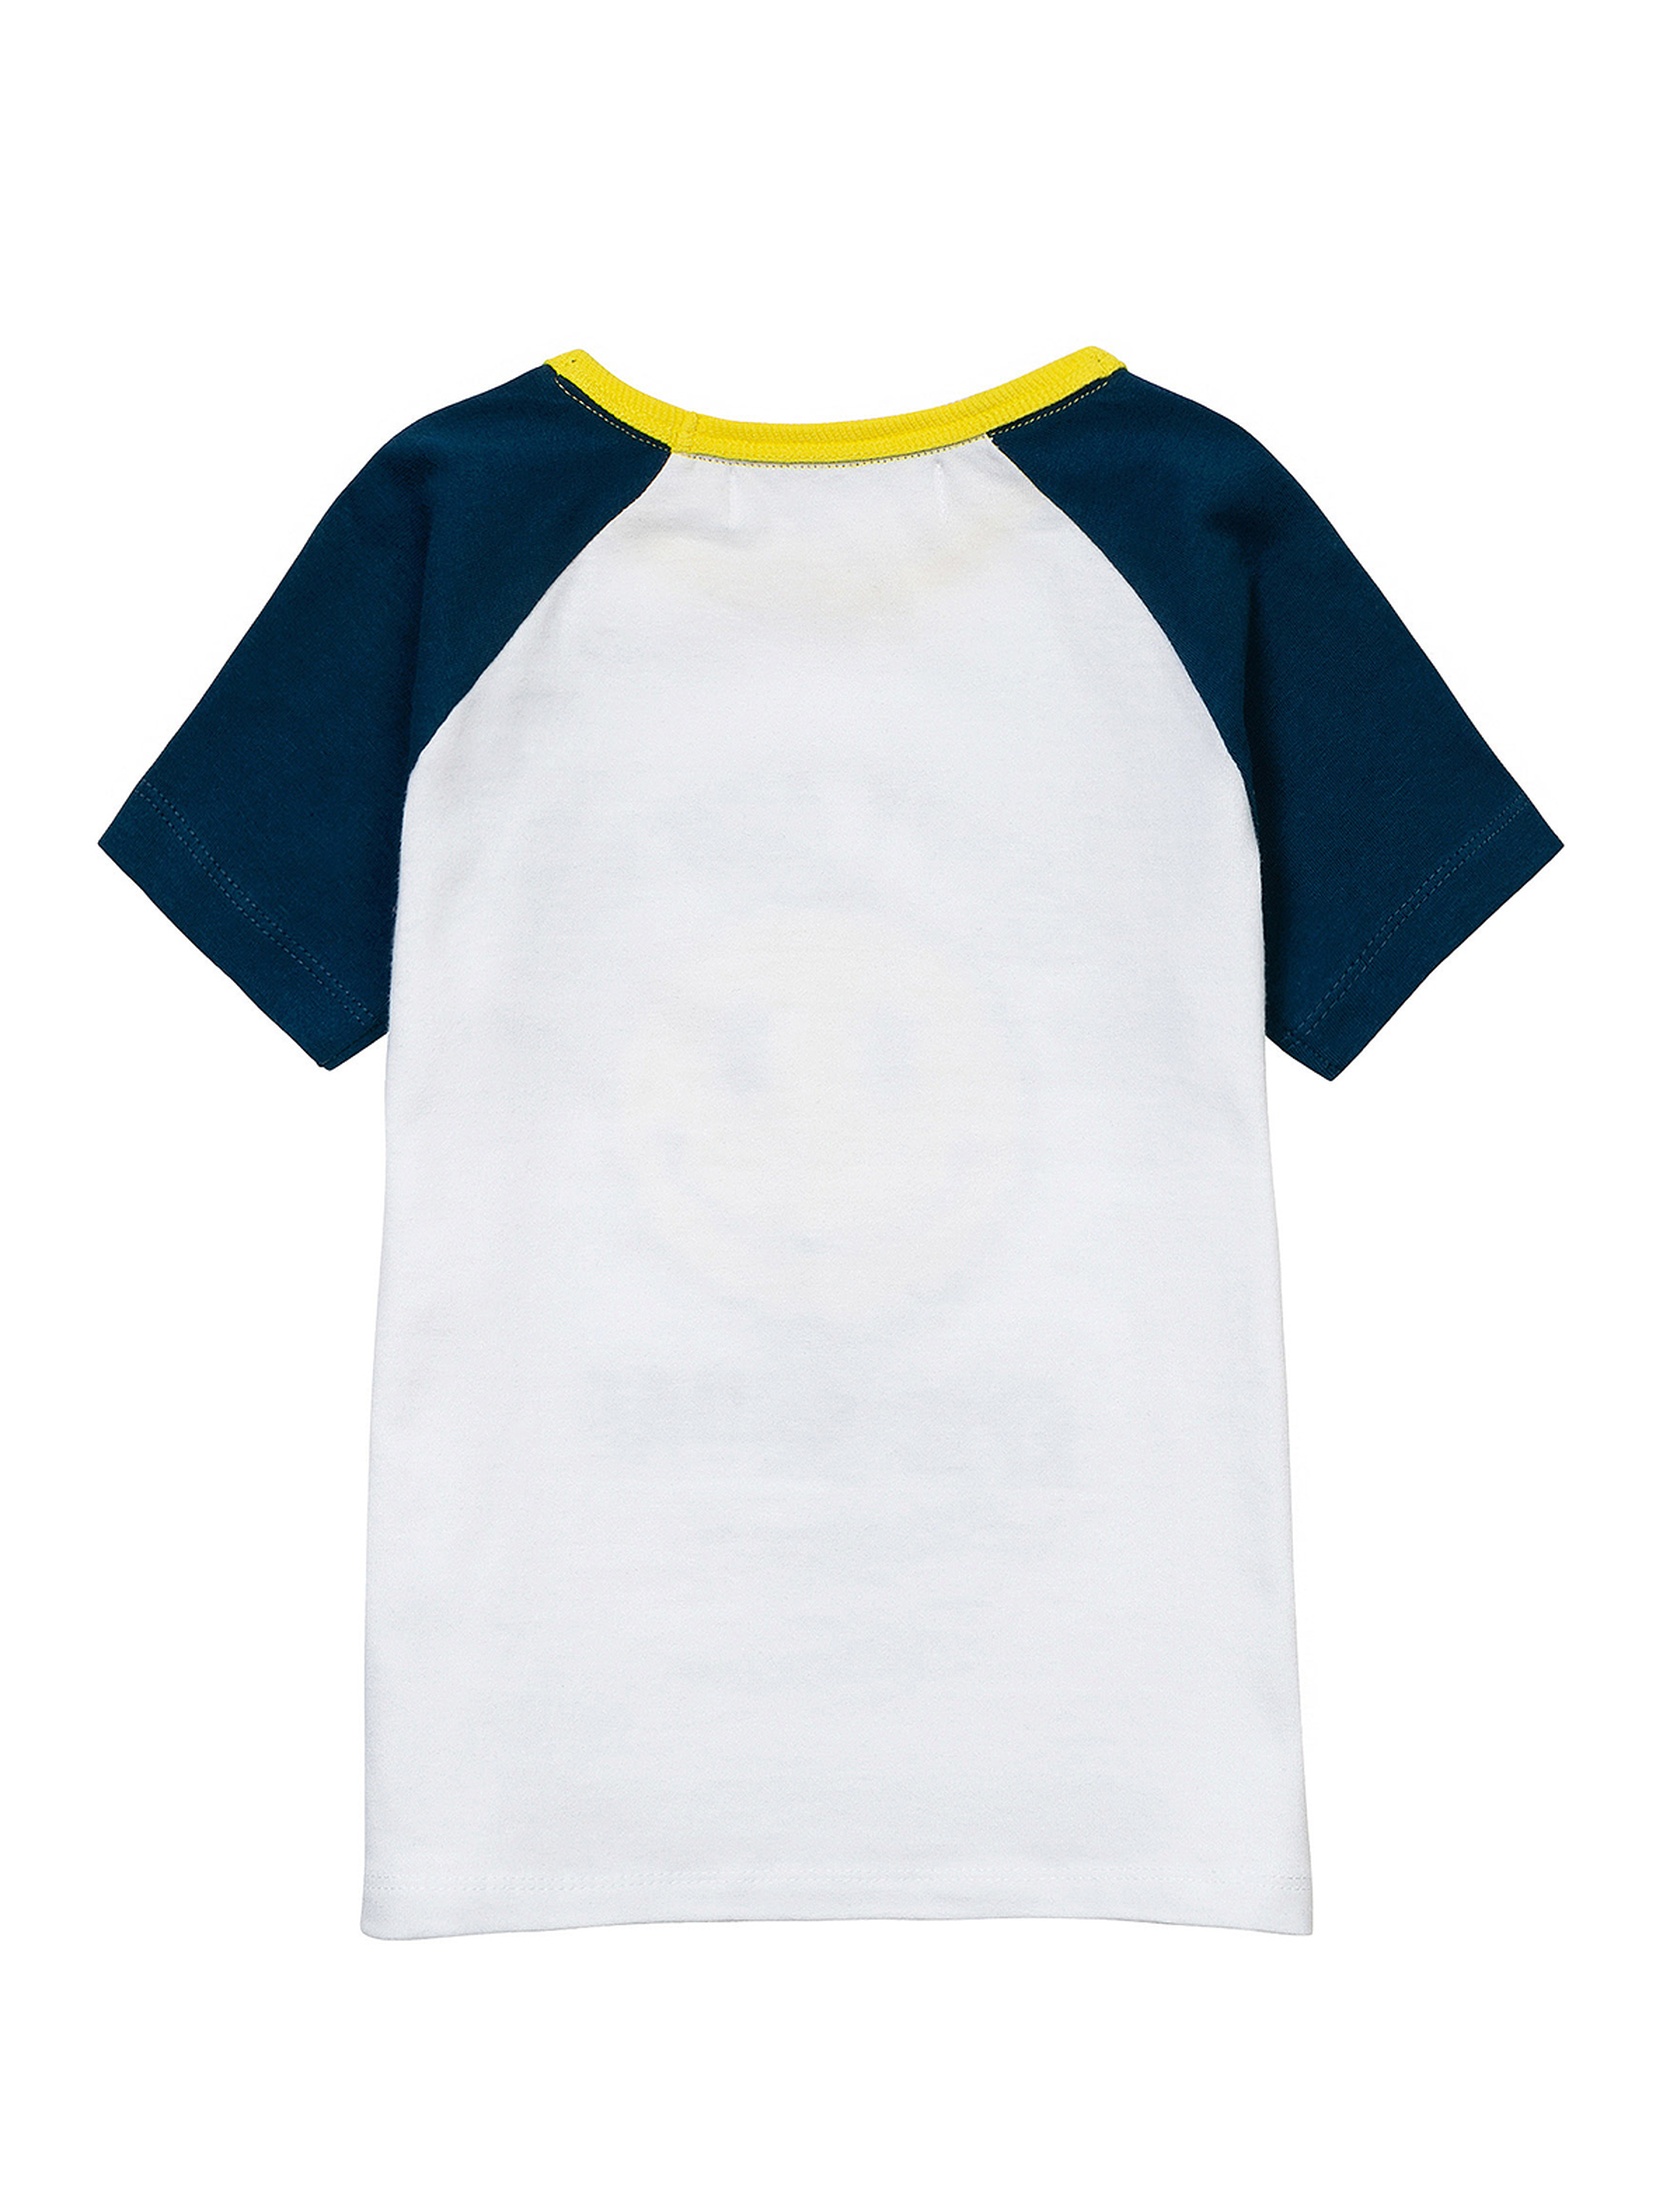 Bawełniany t-shirt dla małrgo chłopca z nadrukiem